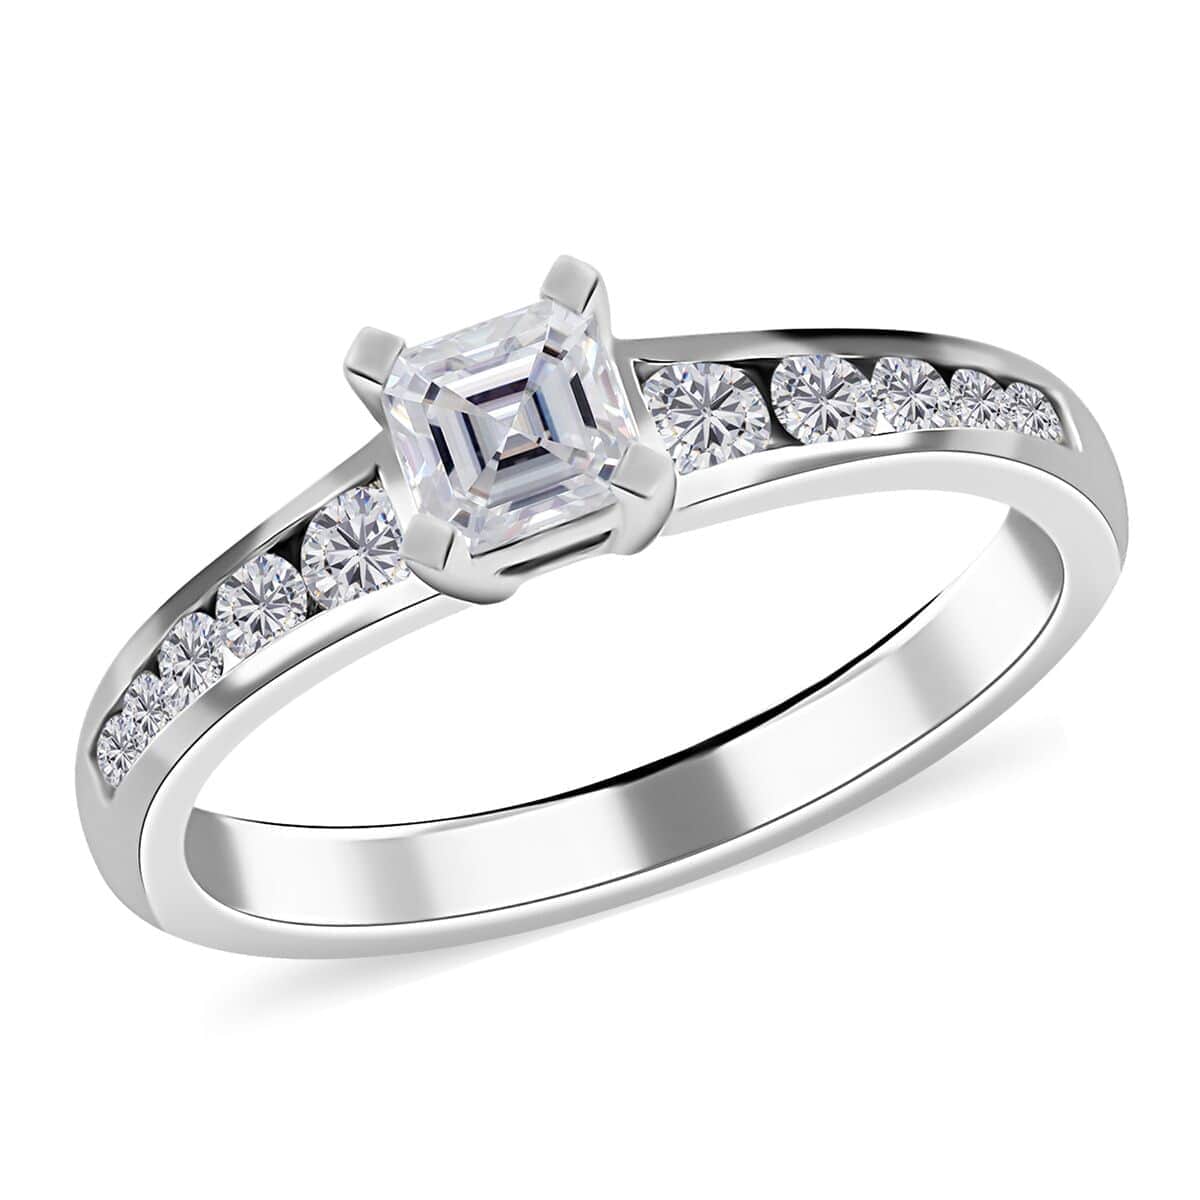 Ankur Treasure Chest Modani 950 Platinum E-F VS Diamond Ring (Size 10.0) 4.55 Grams 0.75 ctw image number 0